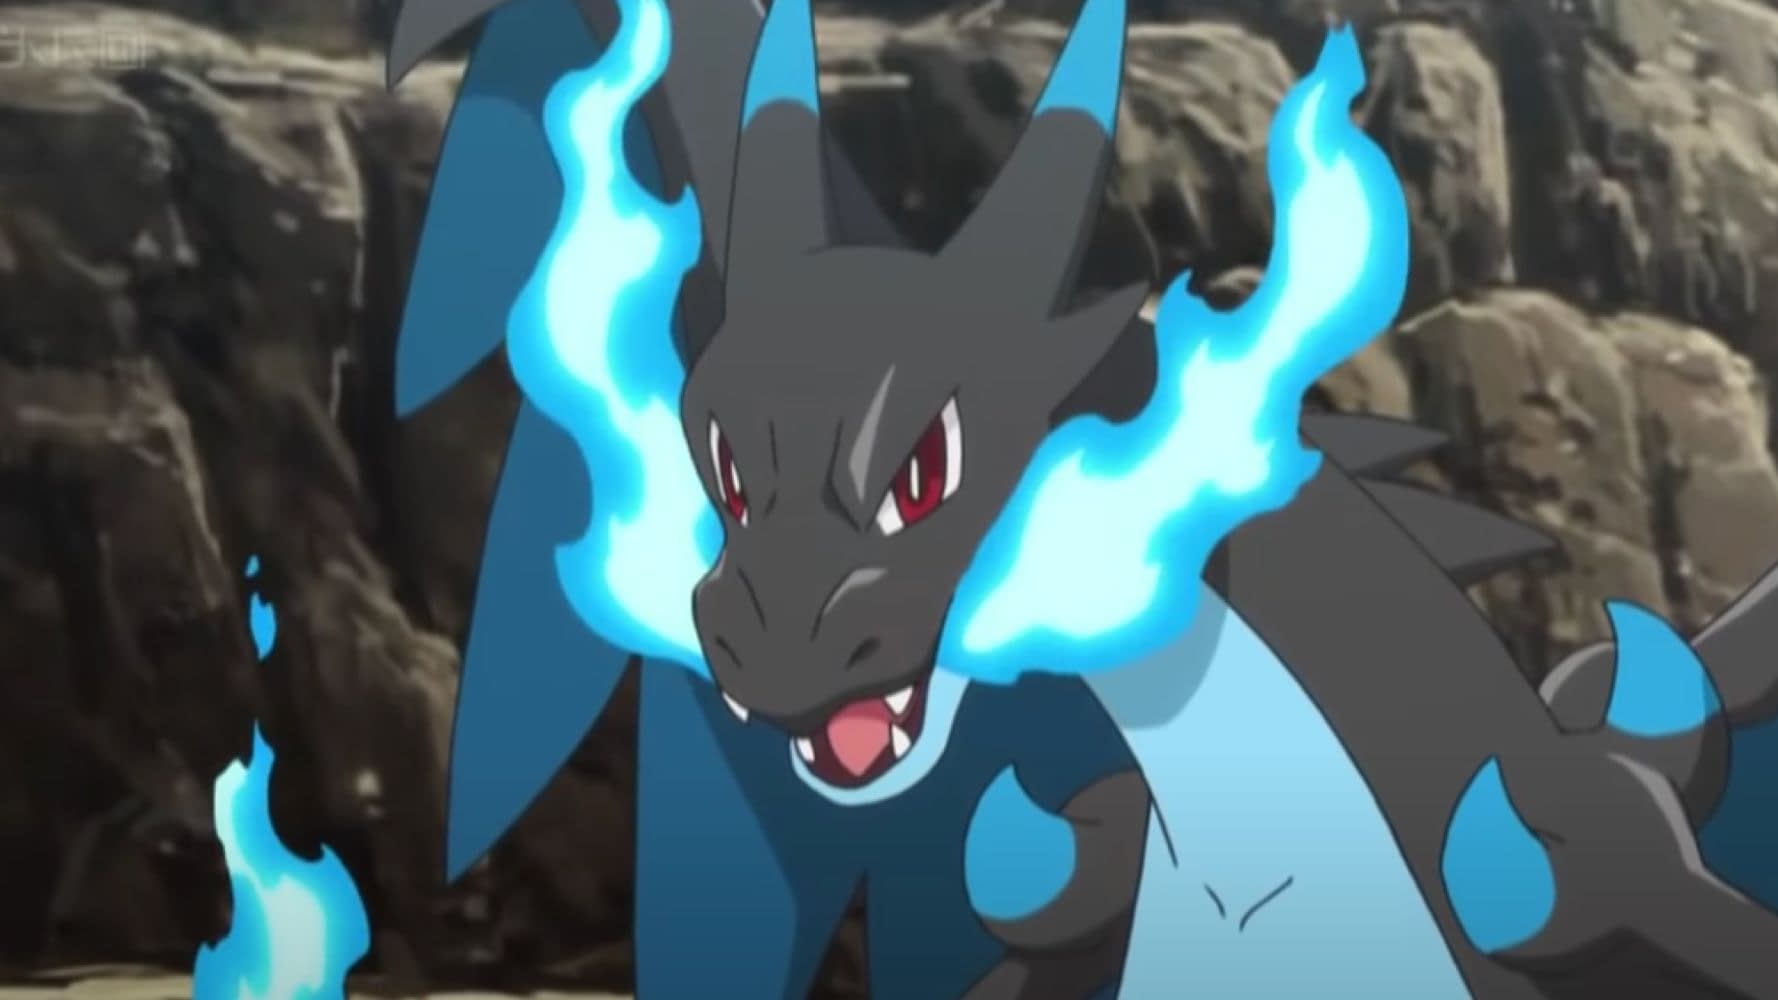 Pokémon X & Y receberão Pinsir e Heracross gratuitamente pela internet